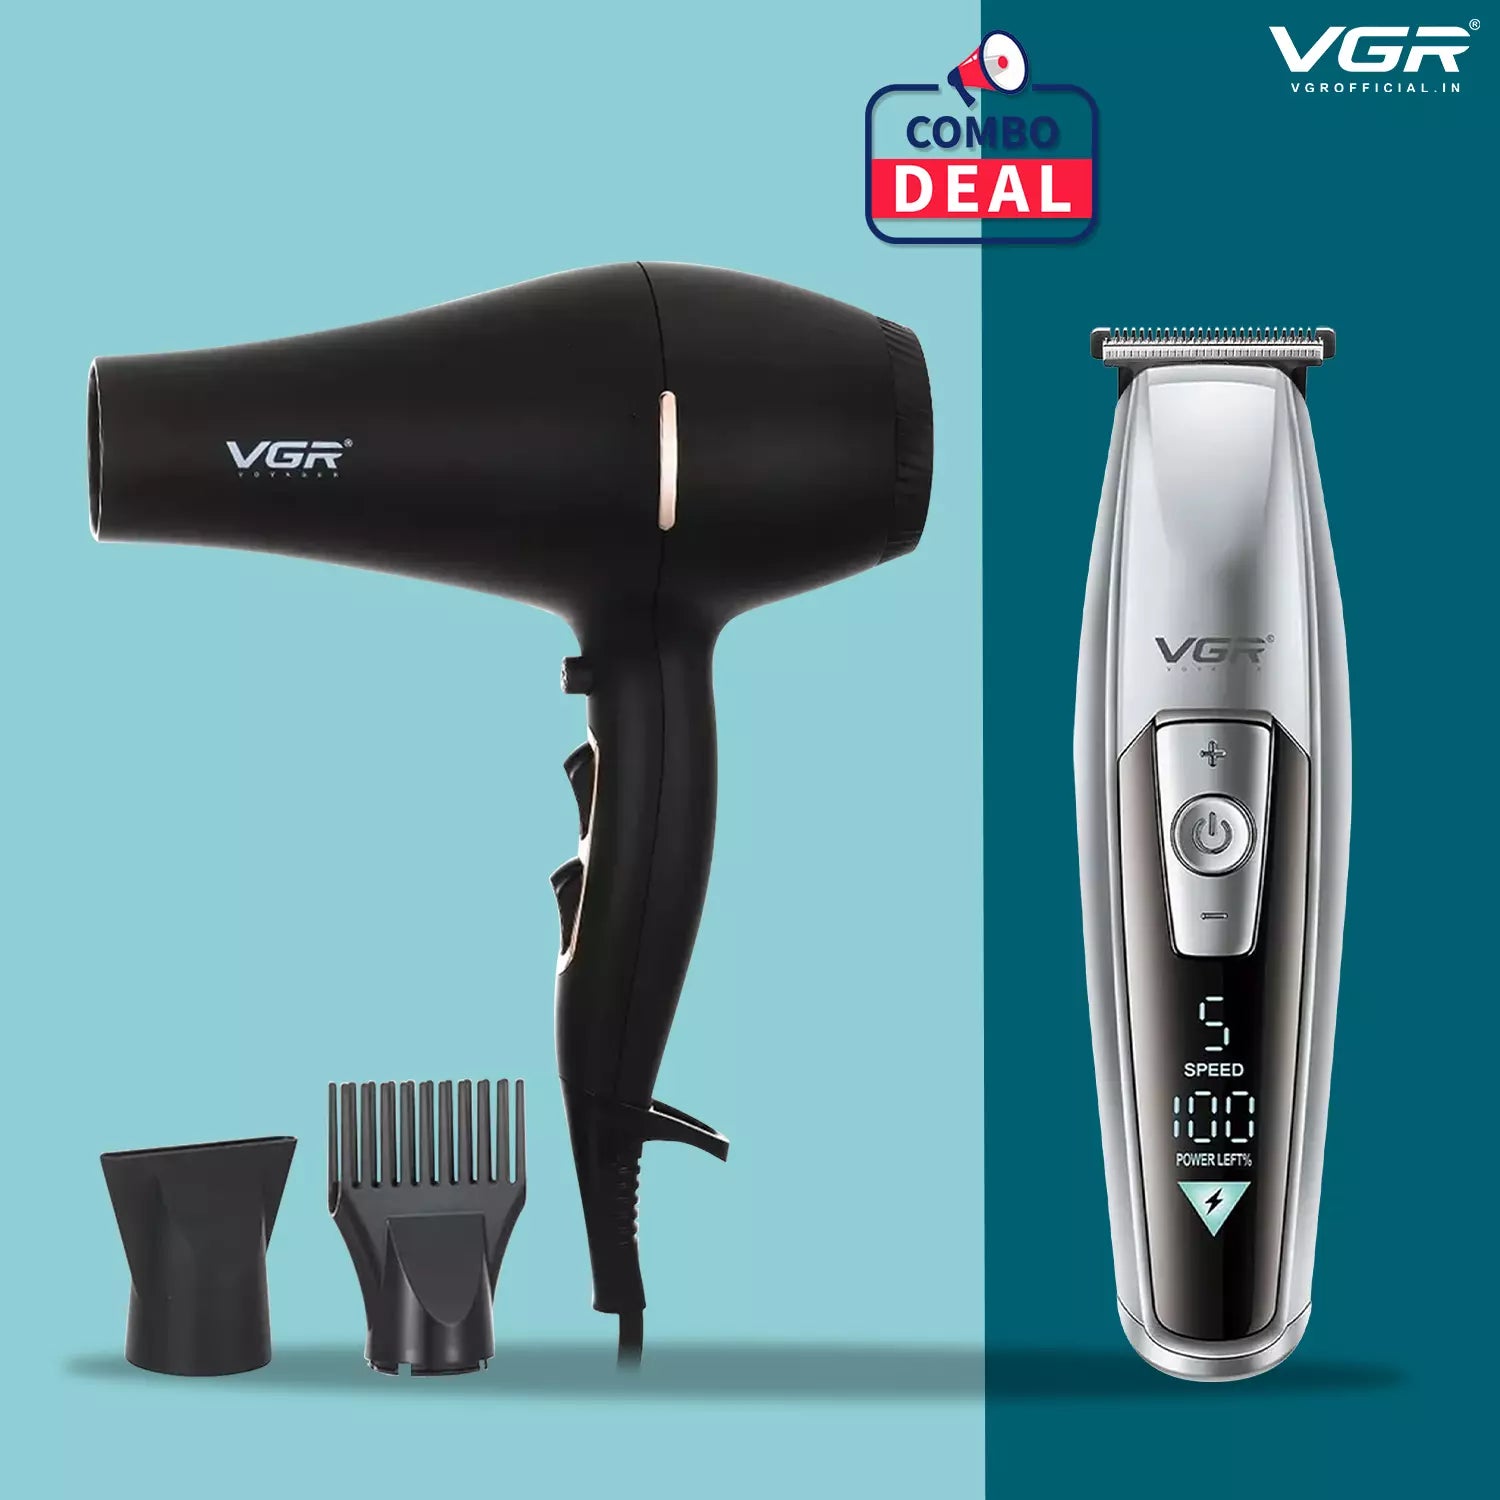 VGR V-970 Hair Trimmer With VGR V-433 Hair Dryer Combo Deal